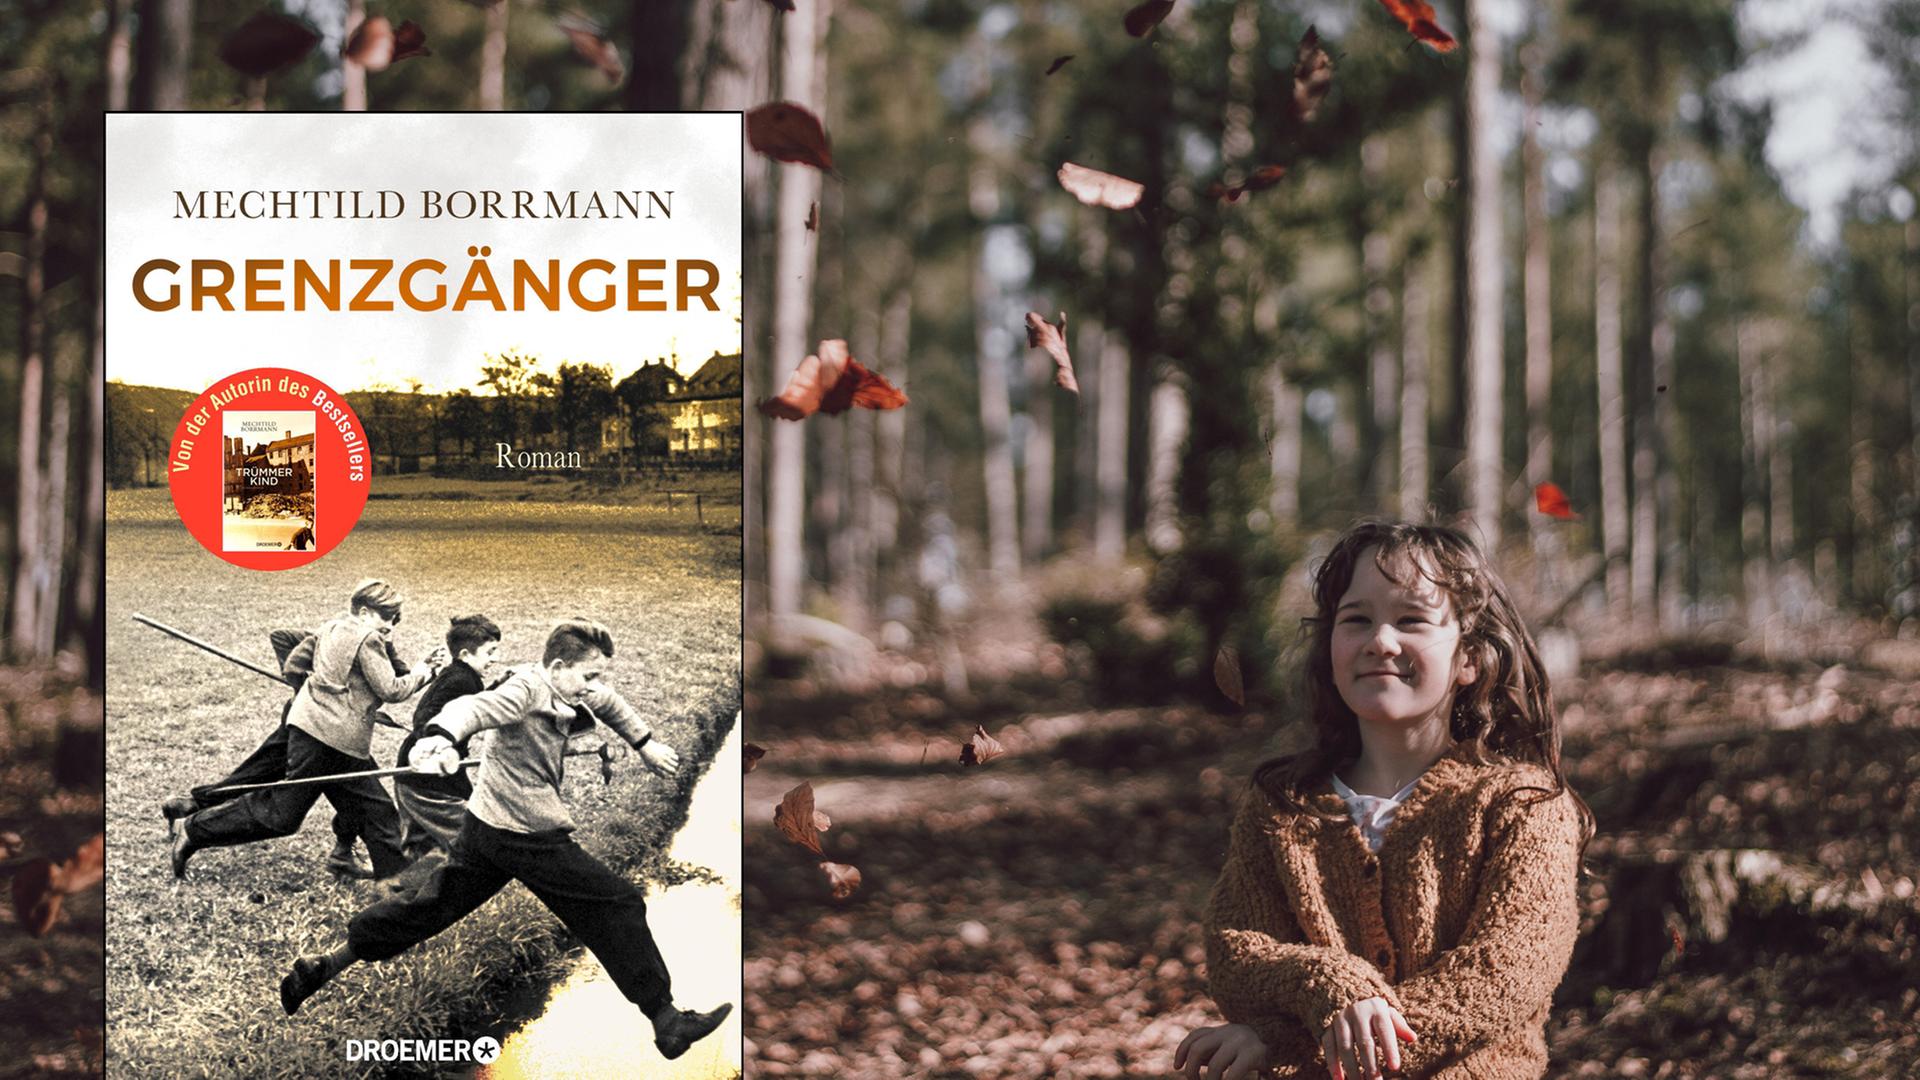 Cover von Mechthild Borrmanns Roman "Grenzgänger". Im Hibntergrund ist ein Mädchen zu sehen, das in einem Wald auf herabfallende Herbstblätter schaut.